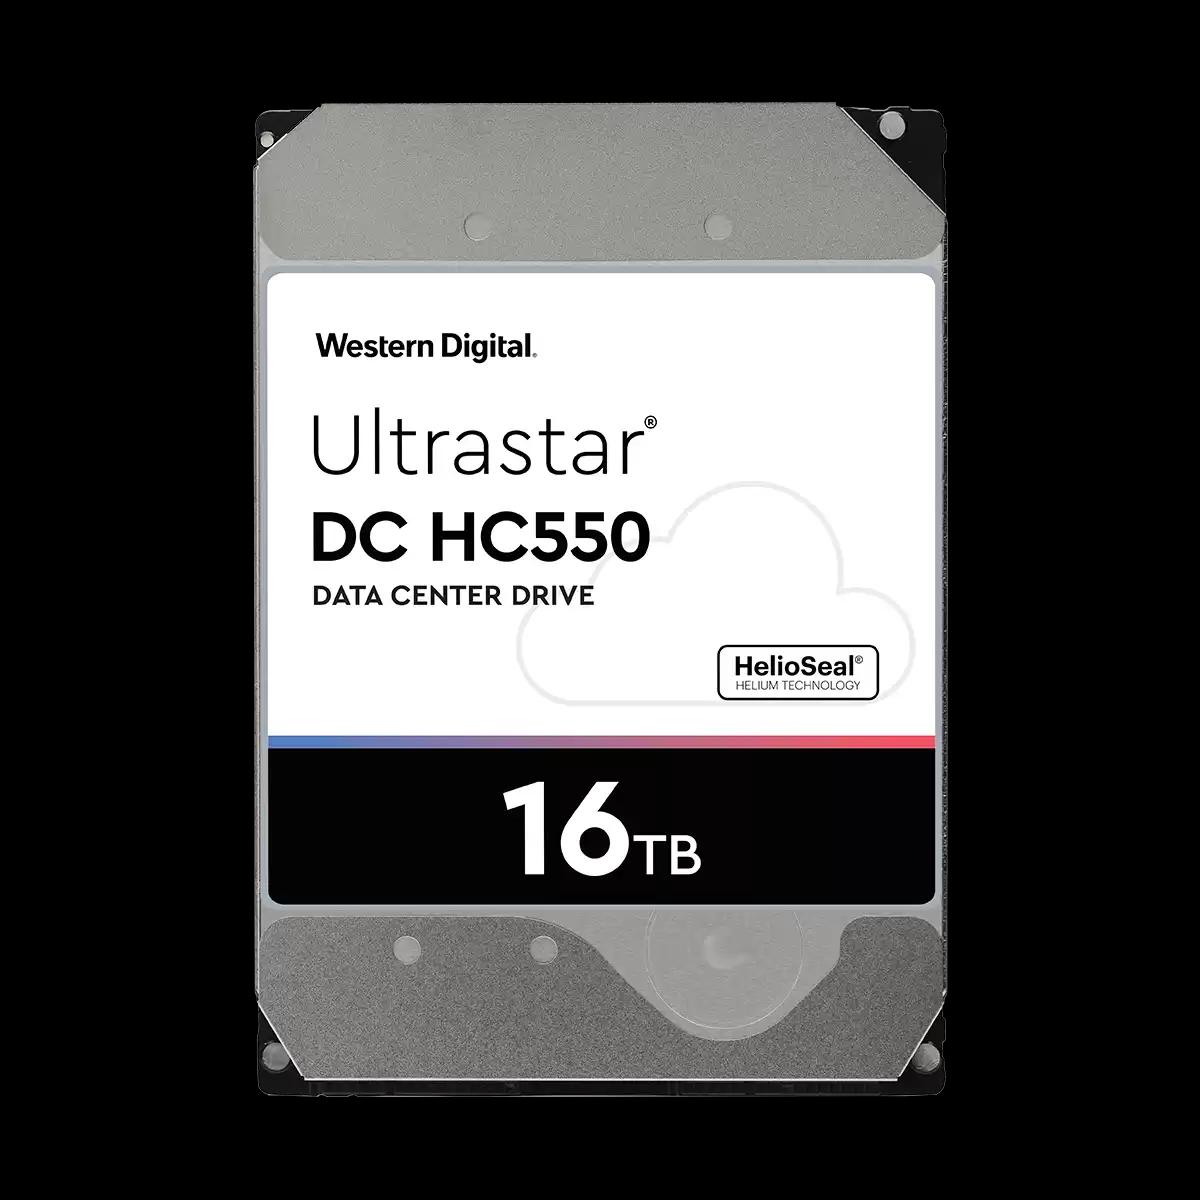 WESTERN DIGITAL 3.5" ULTRASTAR DC HC 550 16TB,SATA III 512M 7200